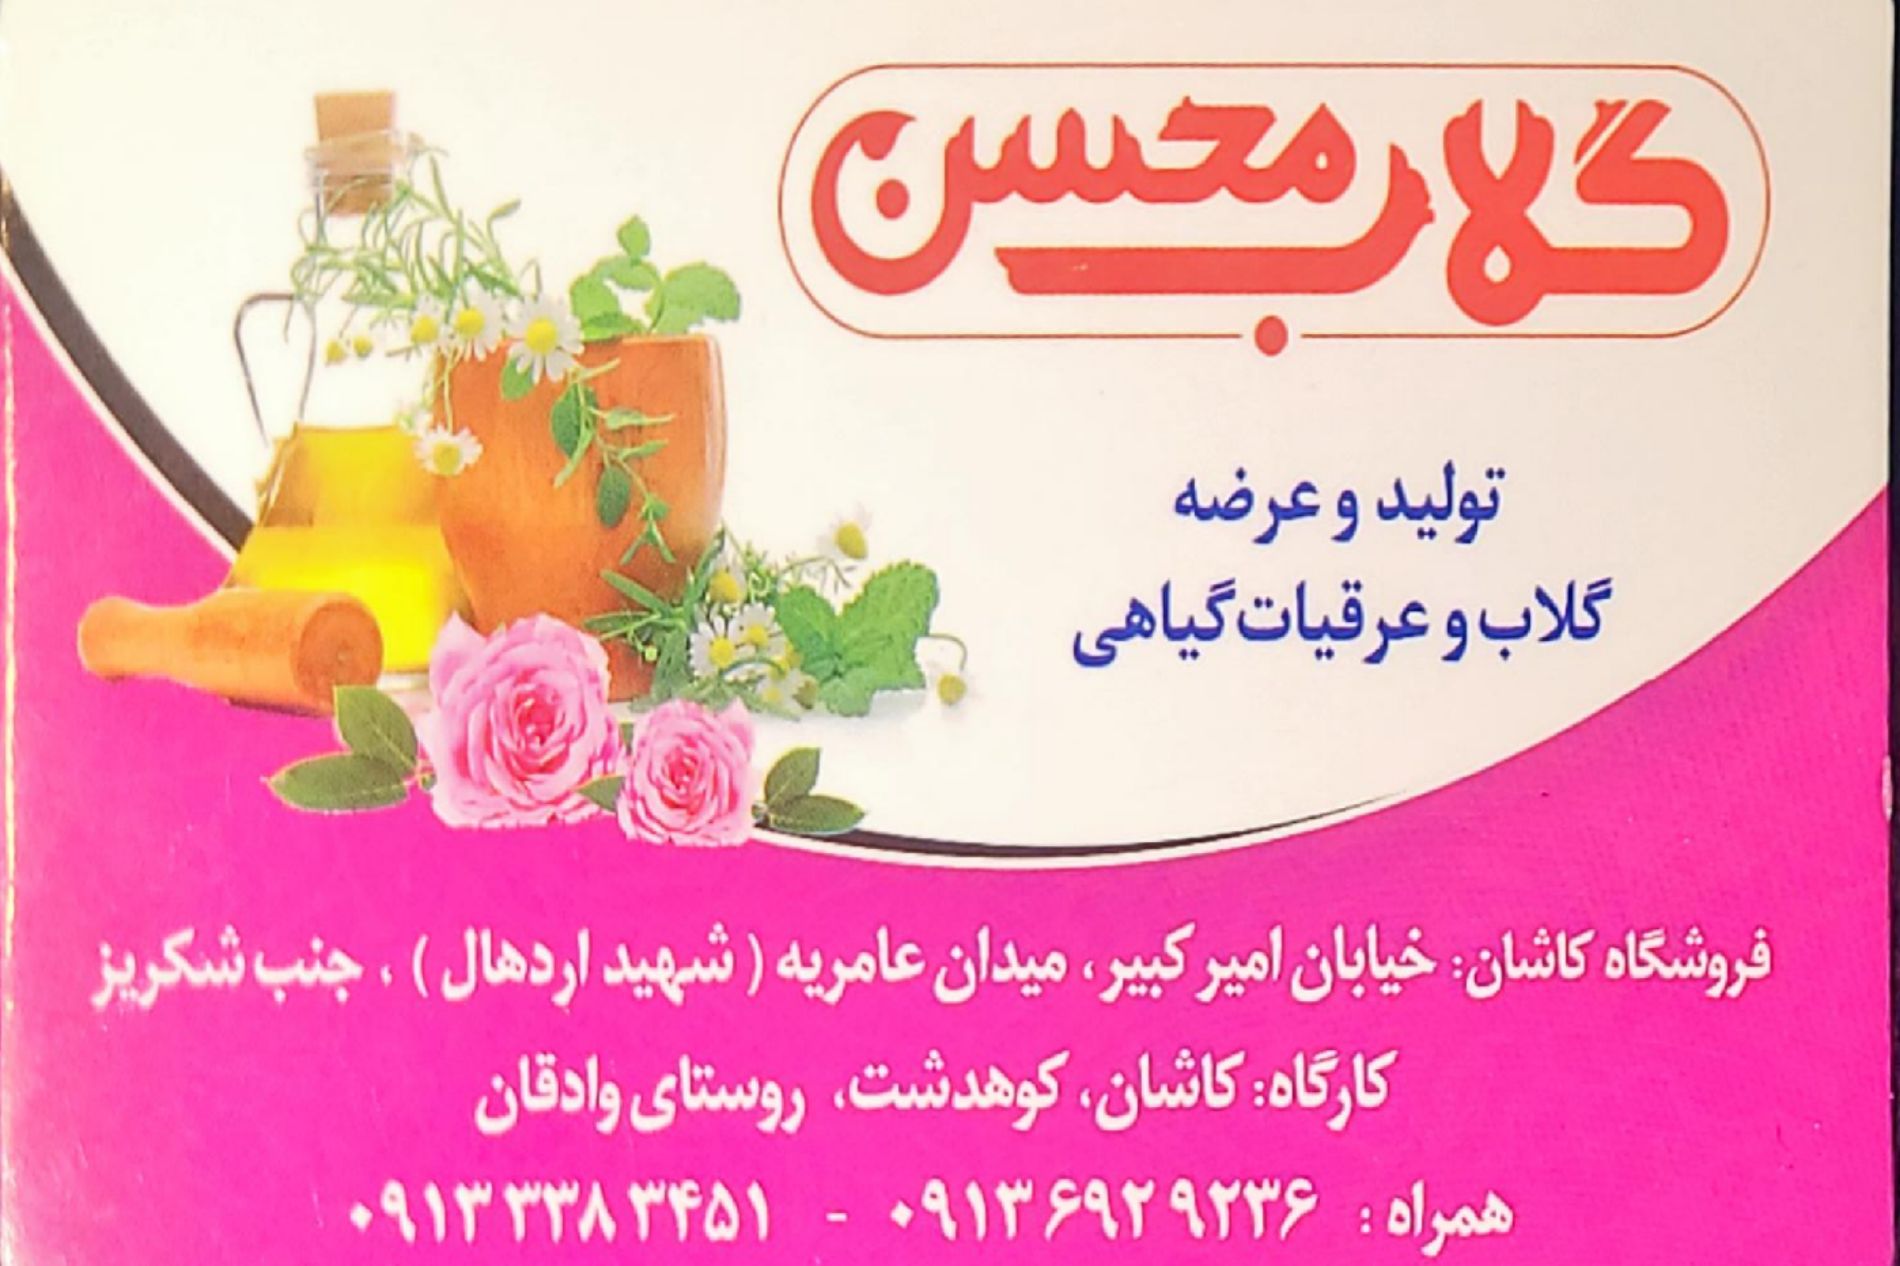 desktop banner گلاب محسن